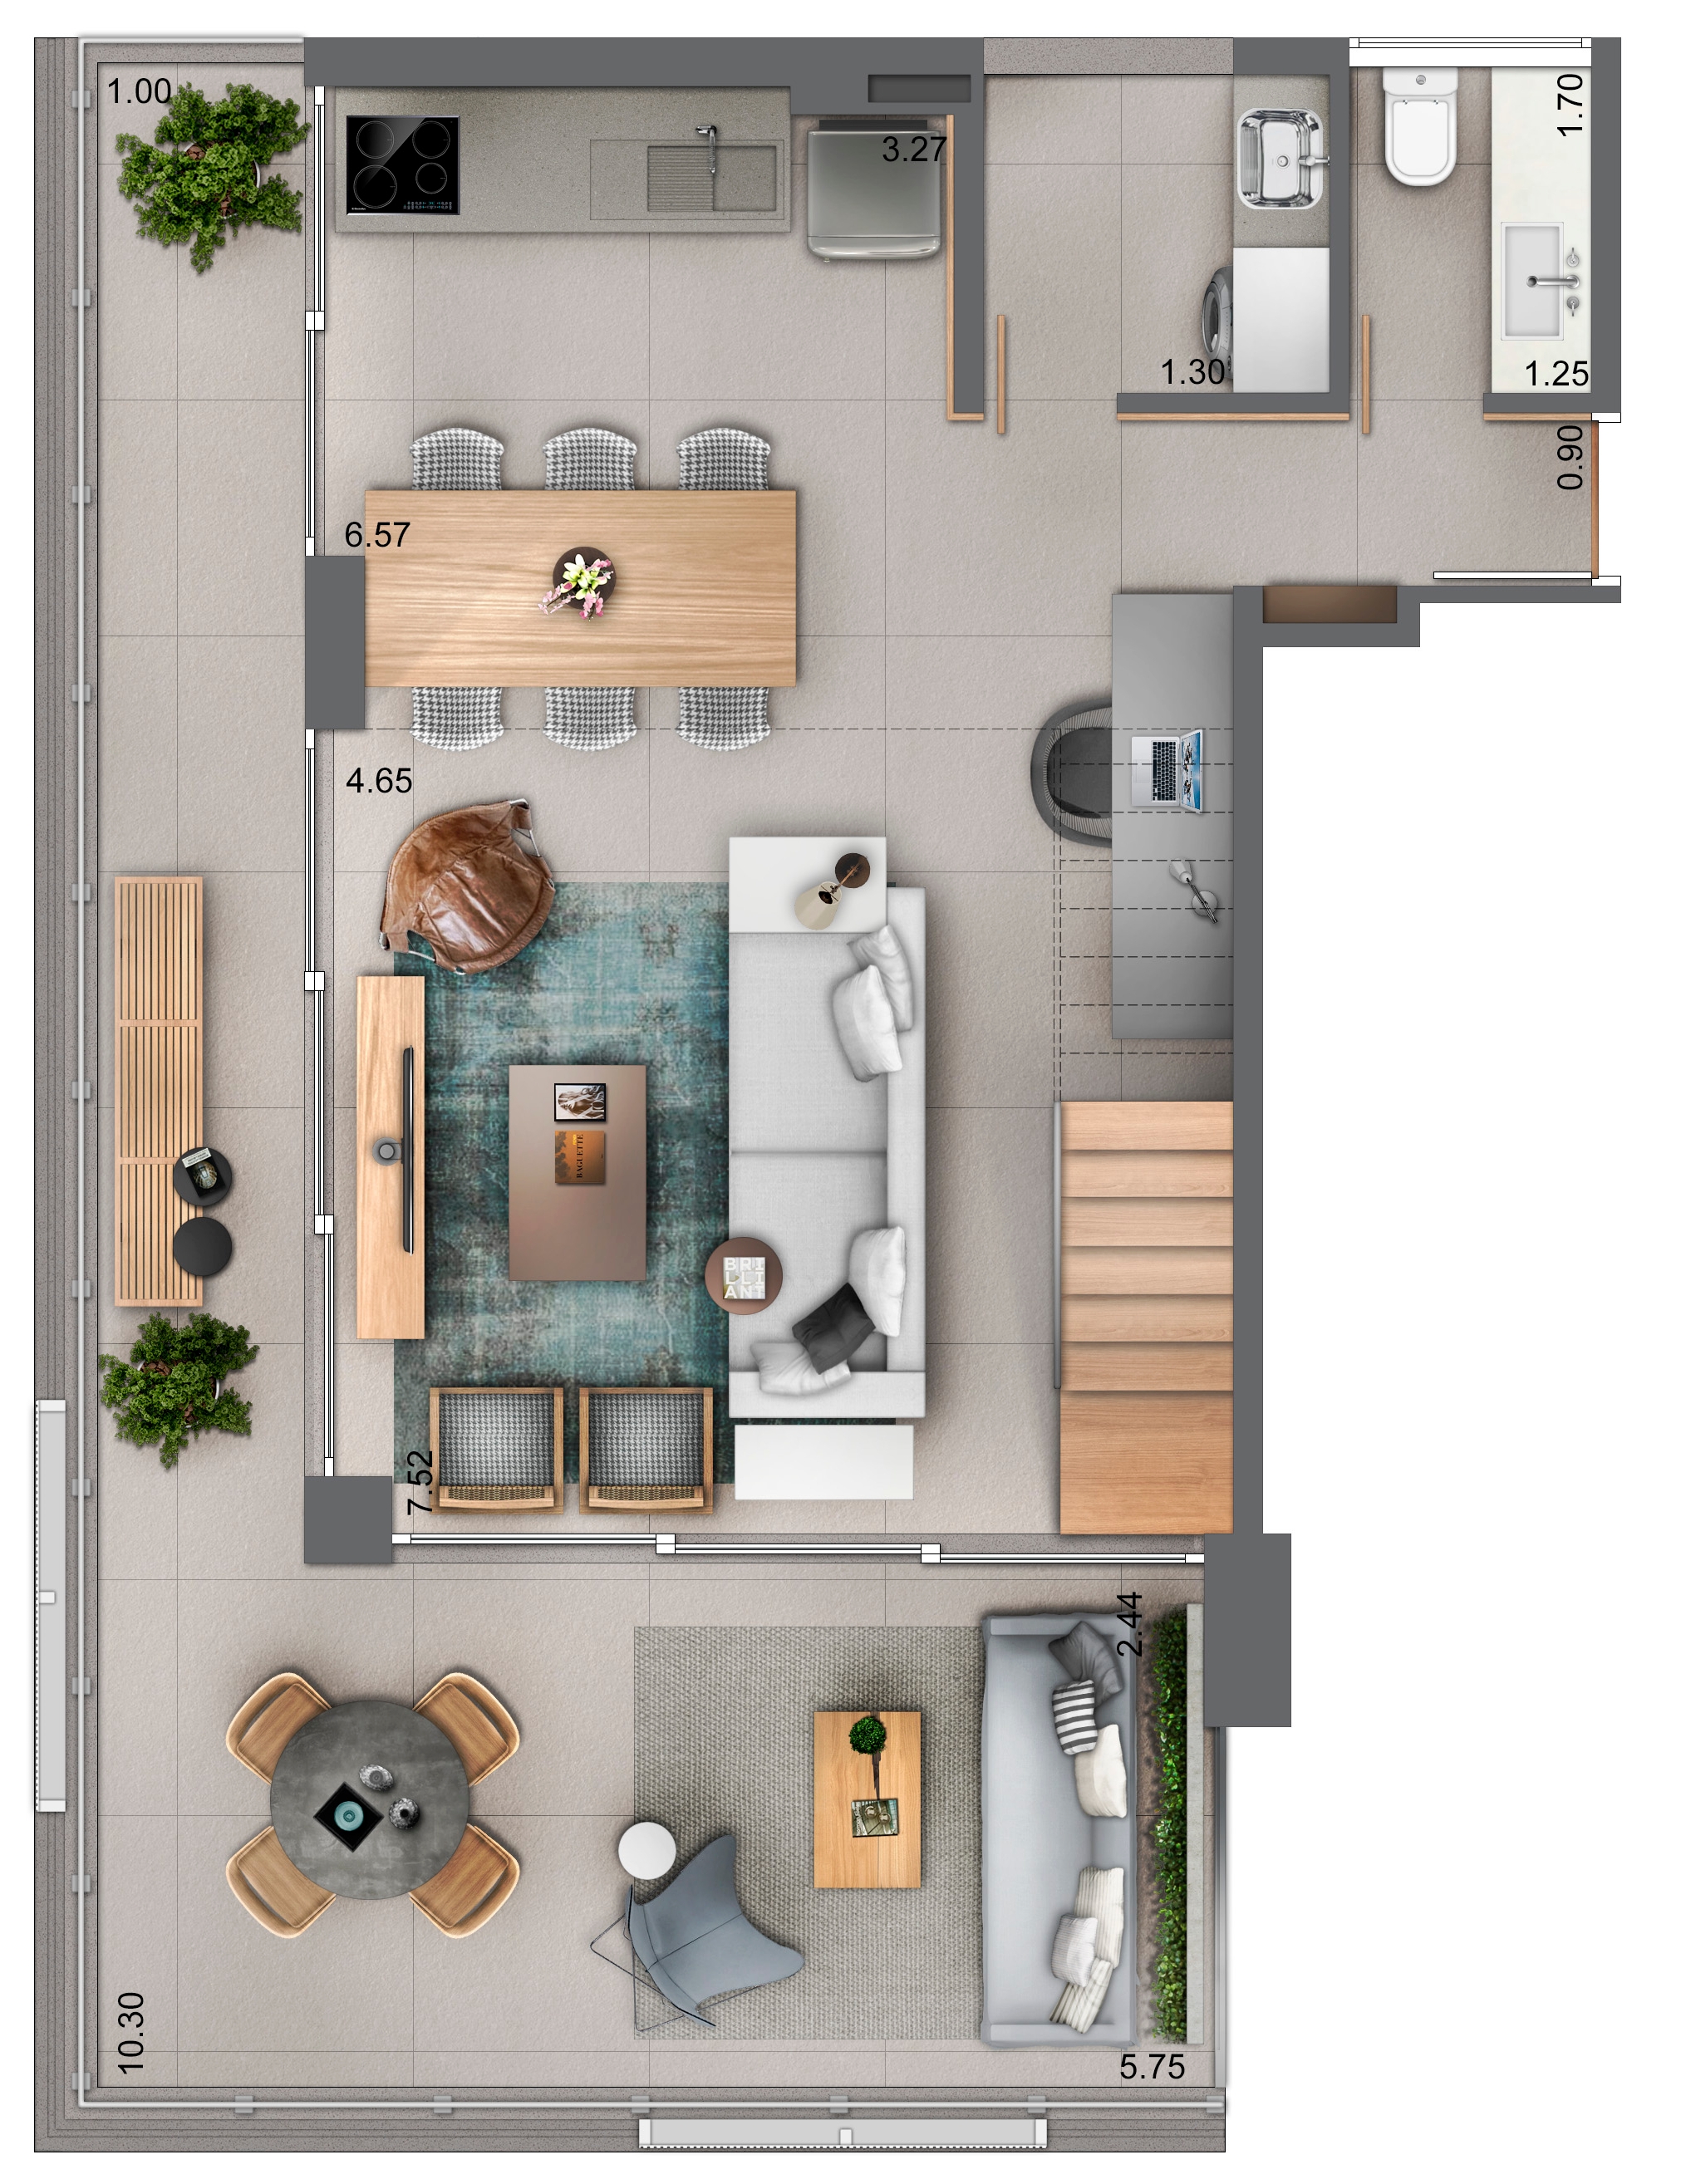 Duplex 139 m² - Piso inferior